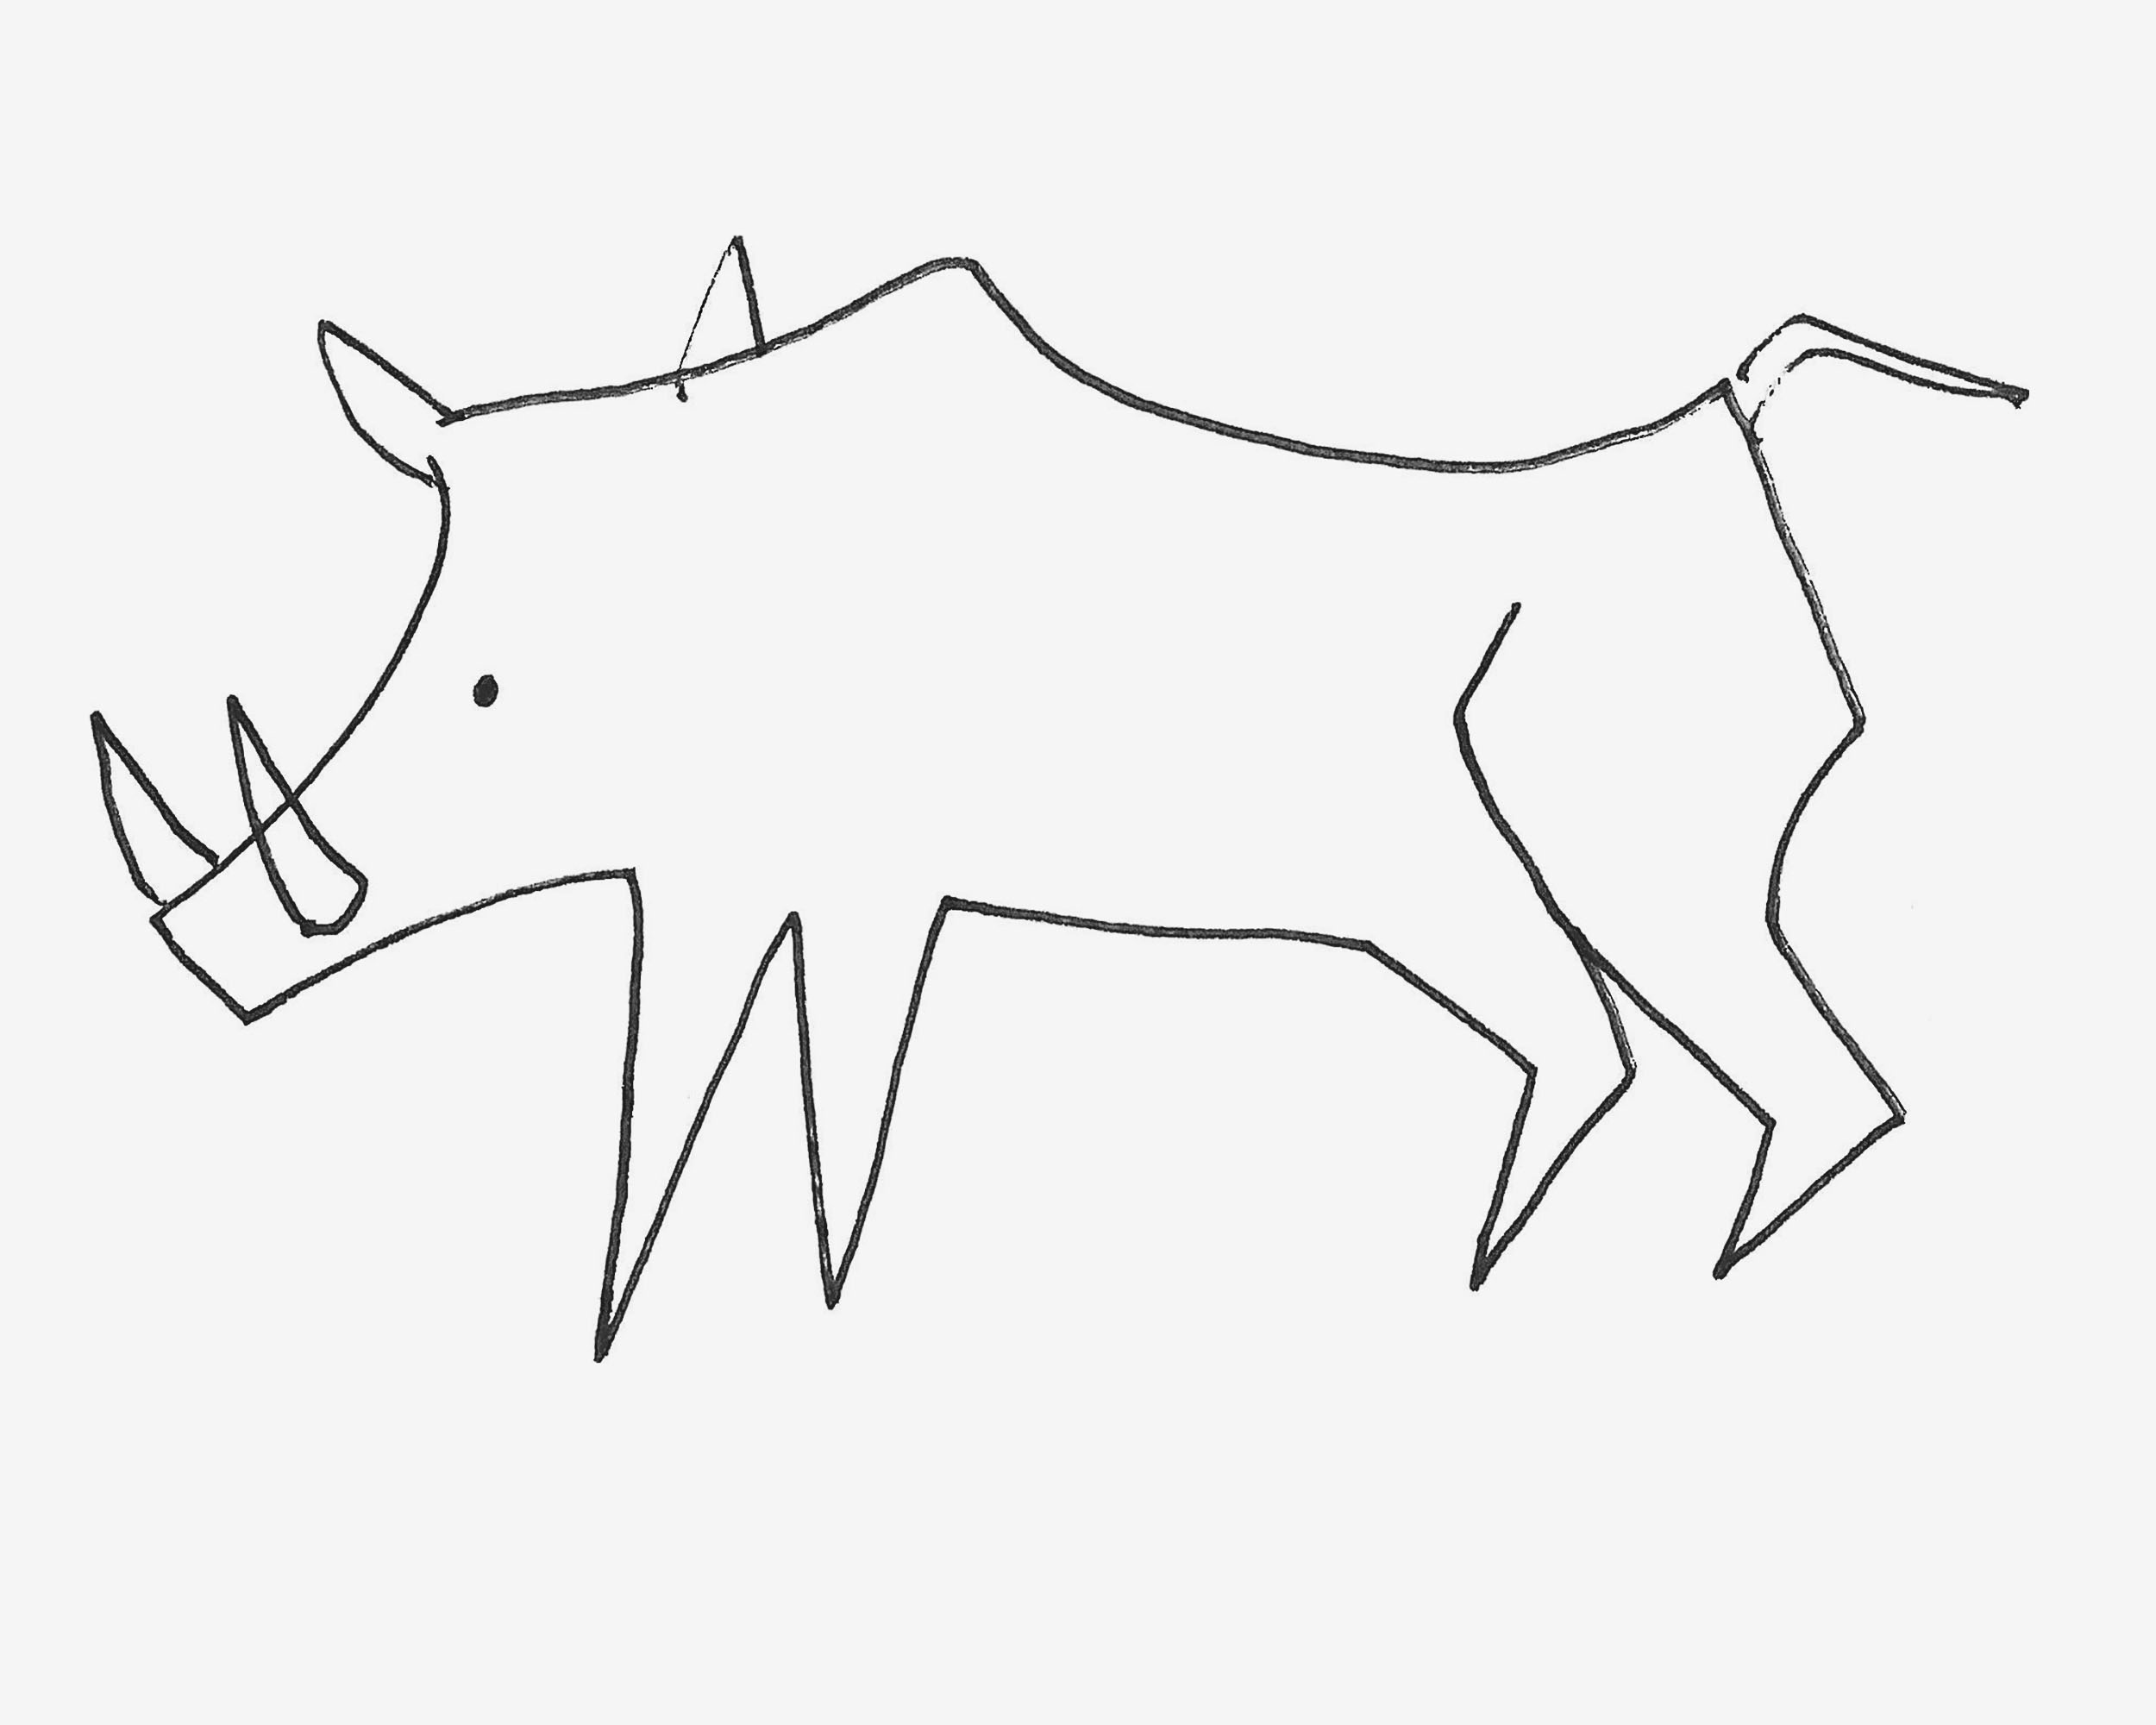 1一9岁儿童画 漂亮简笔画野猪的画法步骤图